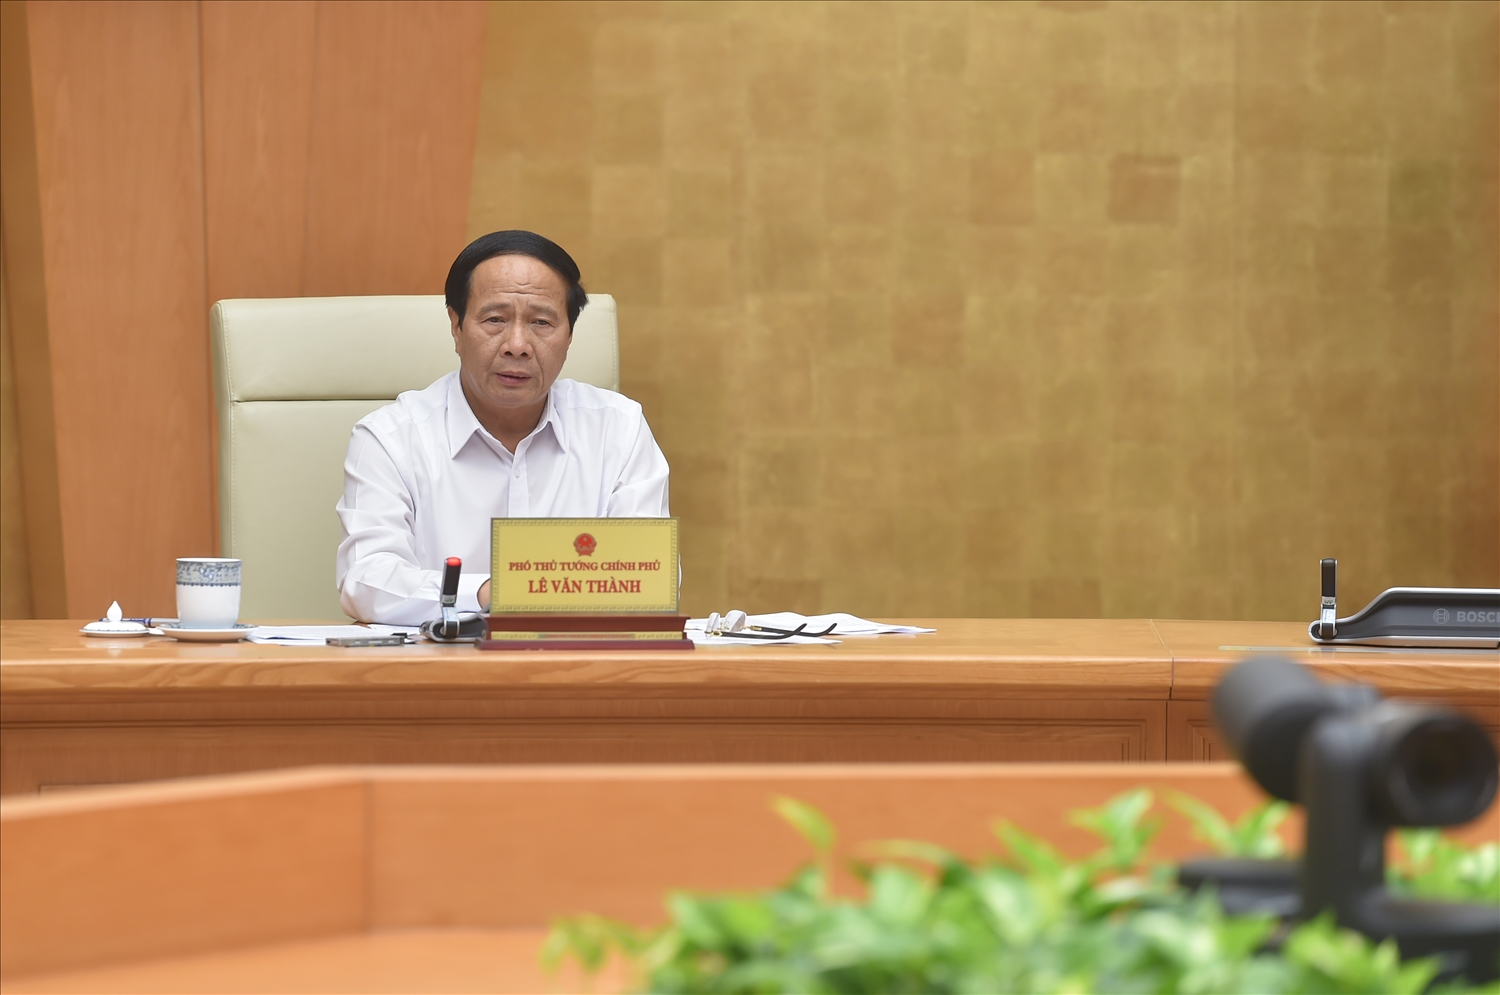 Phó Thủ tướng Chính phủ Lê Văn Thành chủ trì cuộc họp. Ảnh: VGP/Đức Tuân